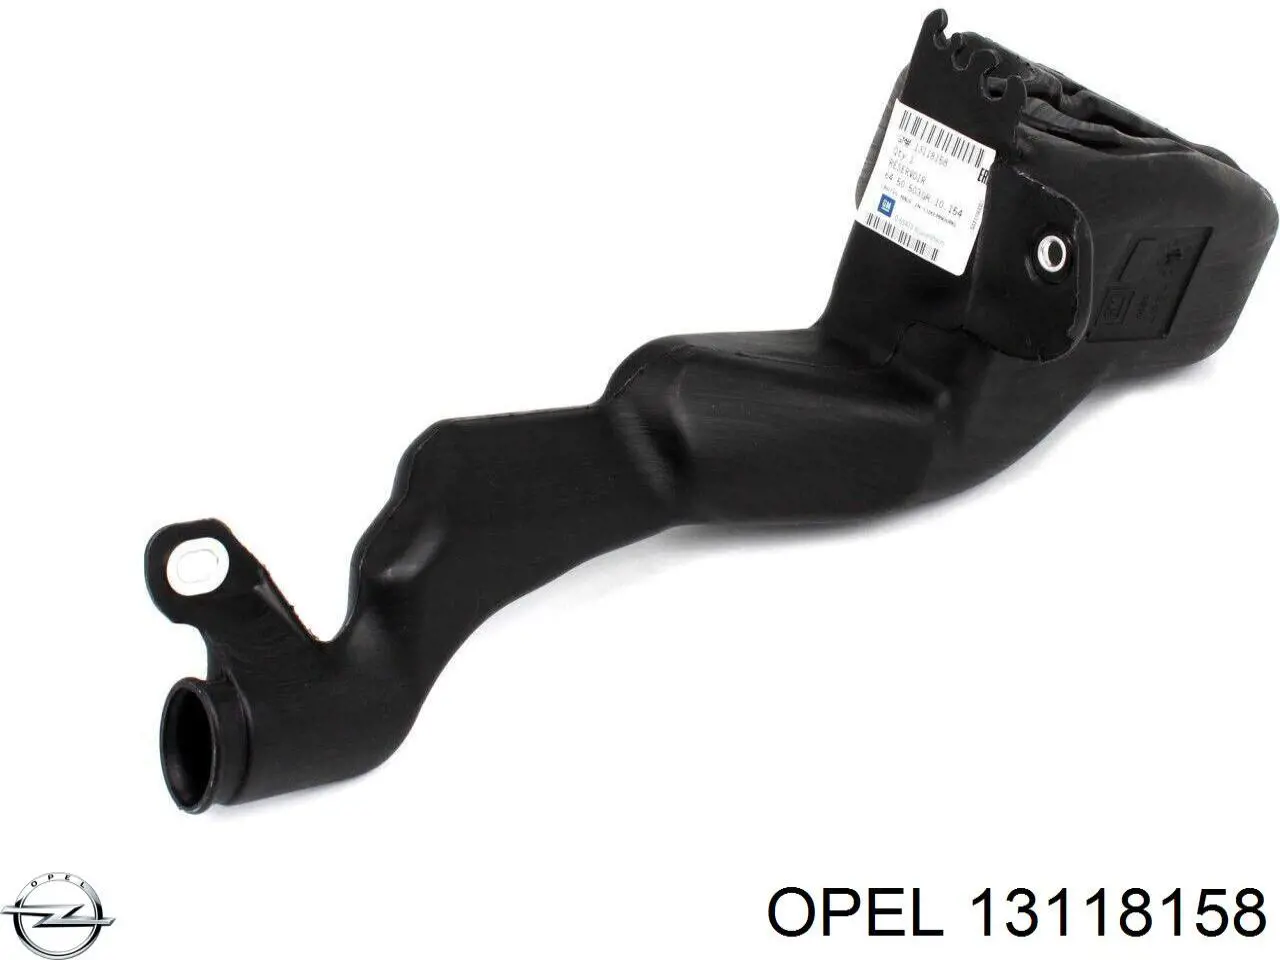 13118158 Opel depósito de agua del limpiaparabrisas